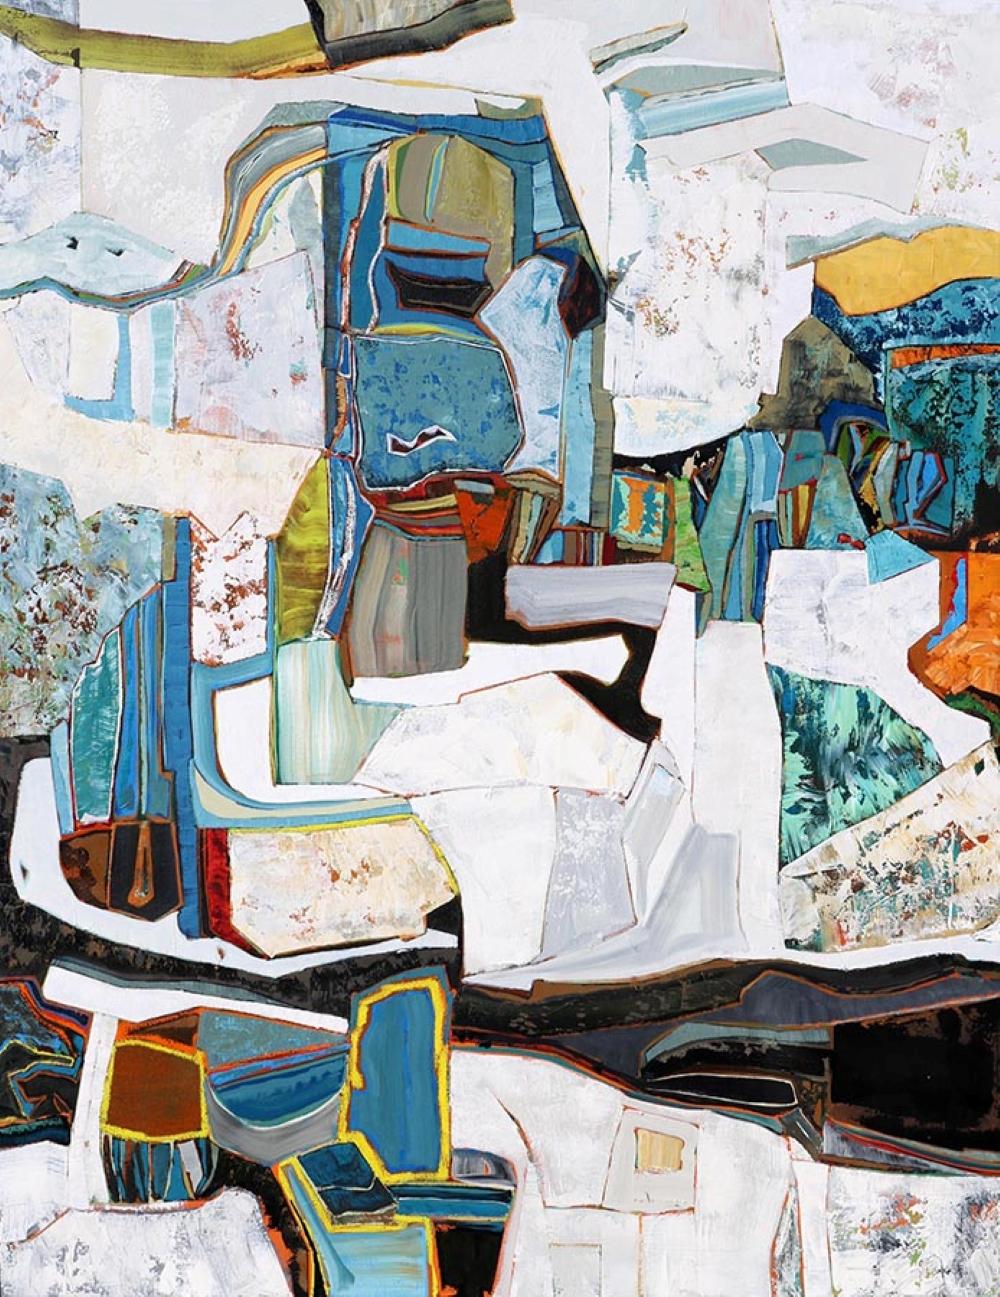 Chase Langford Abstract Painting – "Positano", eine lebendige horizontale Ansicht von überwiegend weißem Sediment mit blauem Untergrund